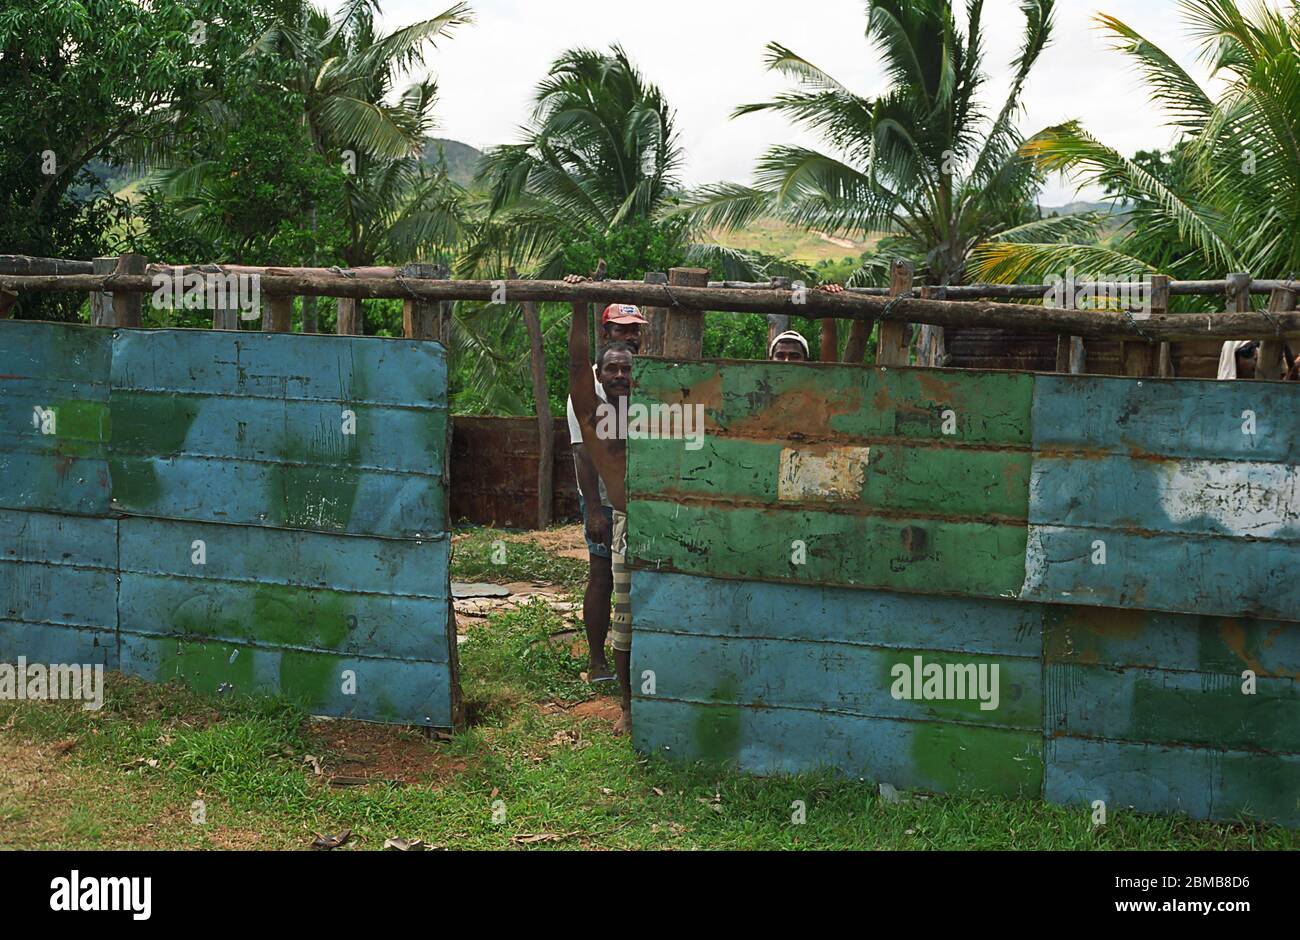 Hausbau mit einem bevorzugten lokalen Material: Abgeflachte Ölfässer: Tau Dorf, Viti Levu, Fidschi Stockfoto